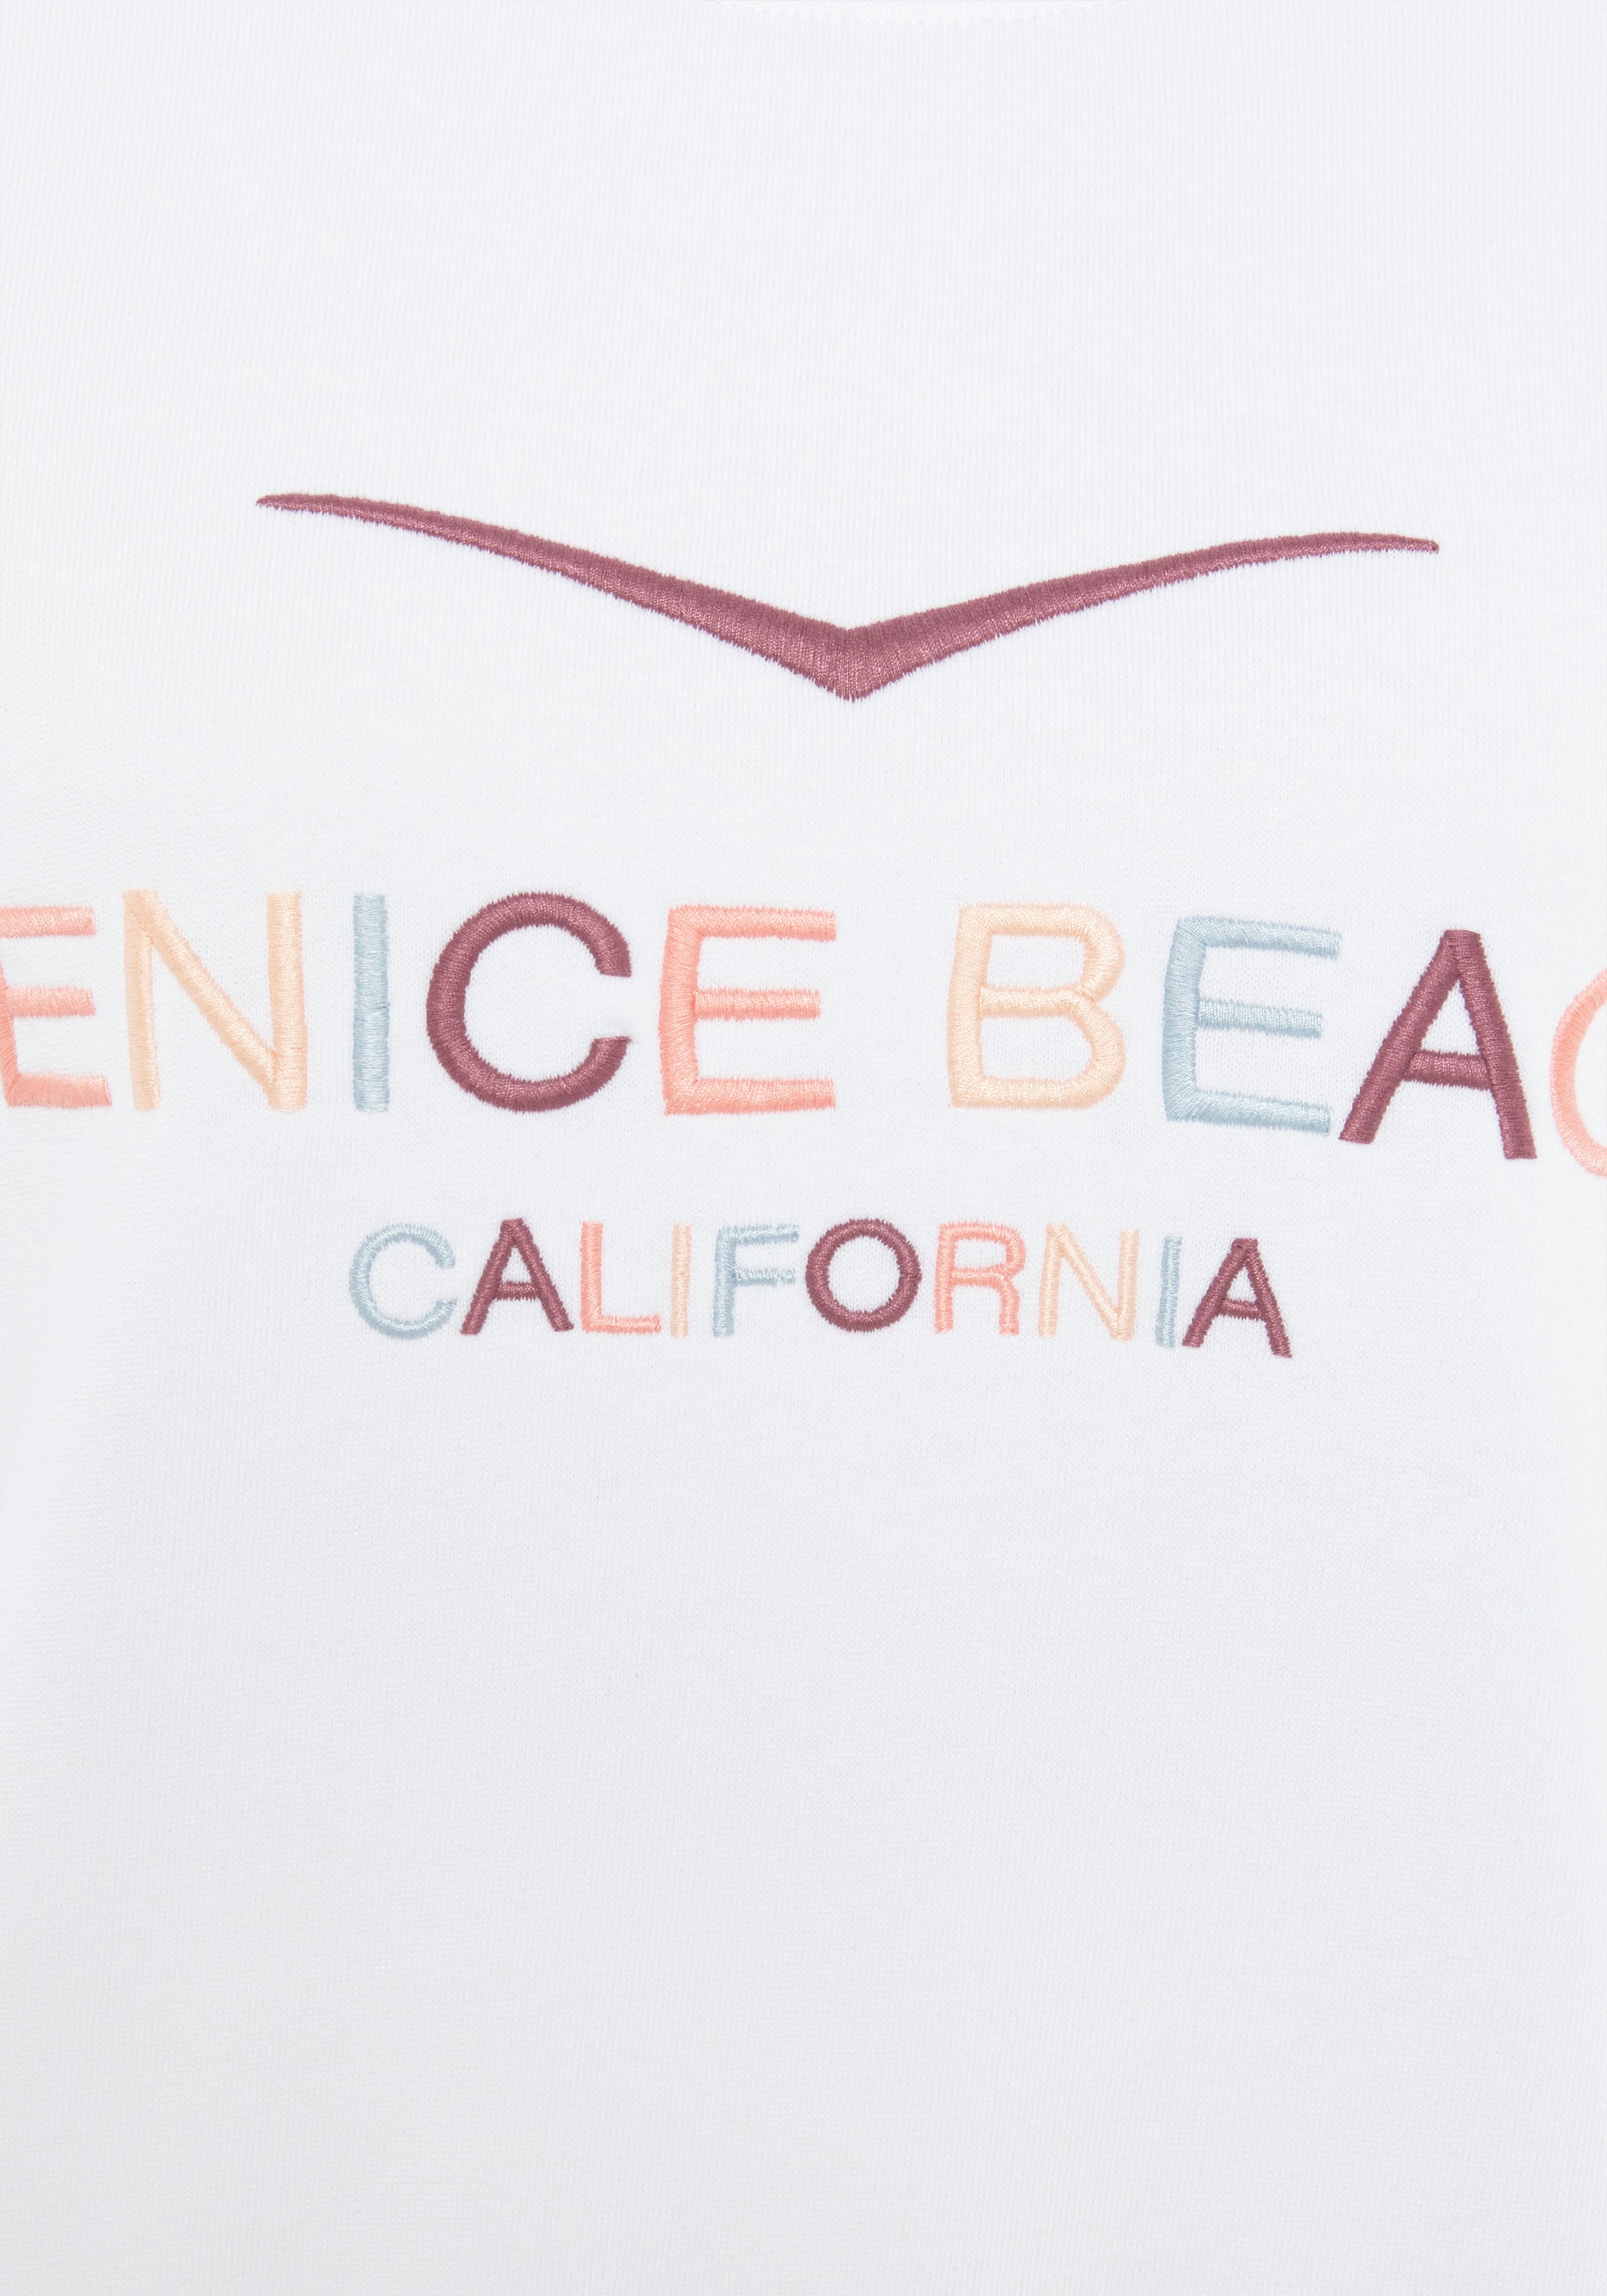 Venice Beach Sweatshirt, mit grosser Logostickerei, sportlich-casual